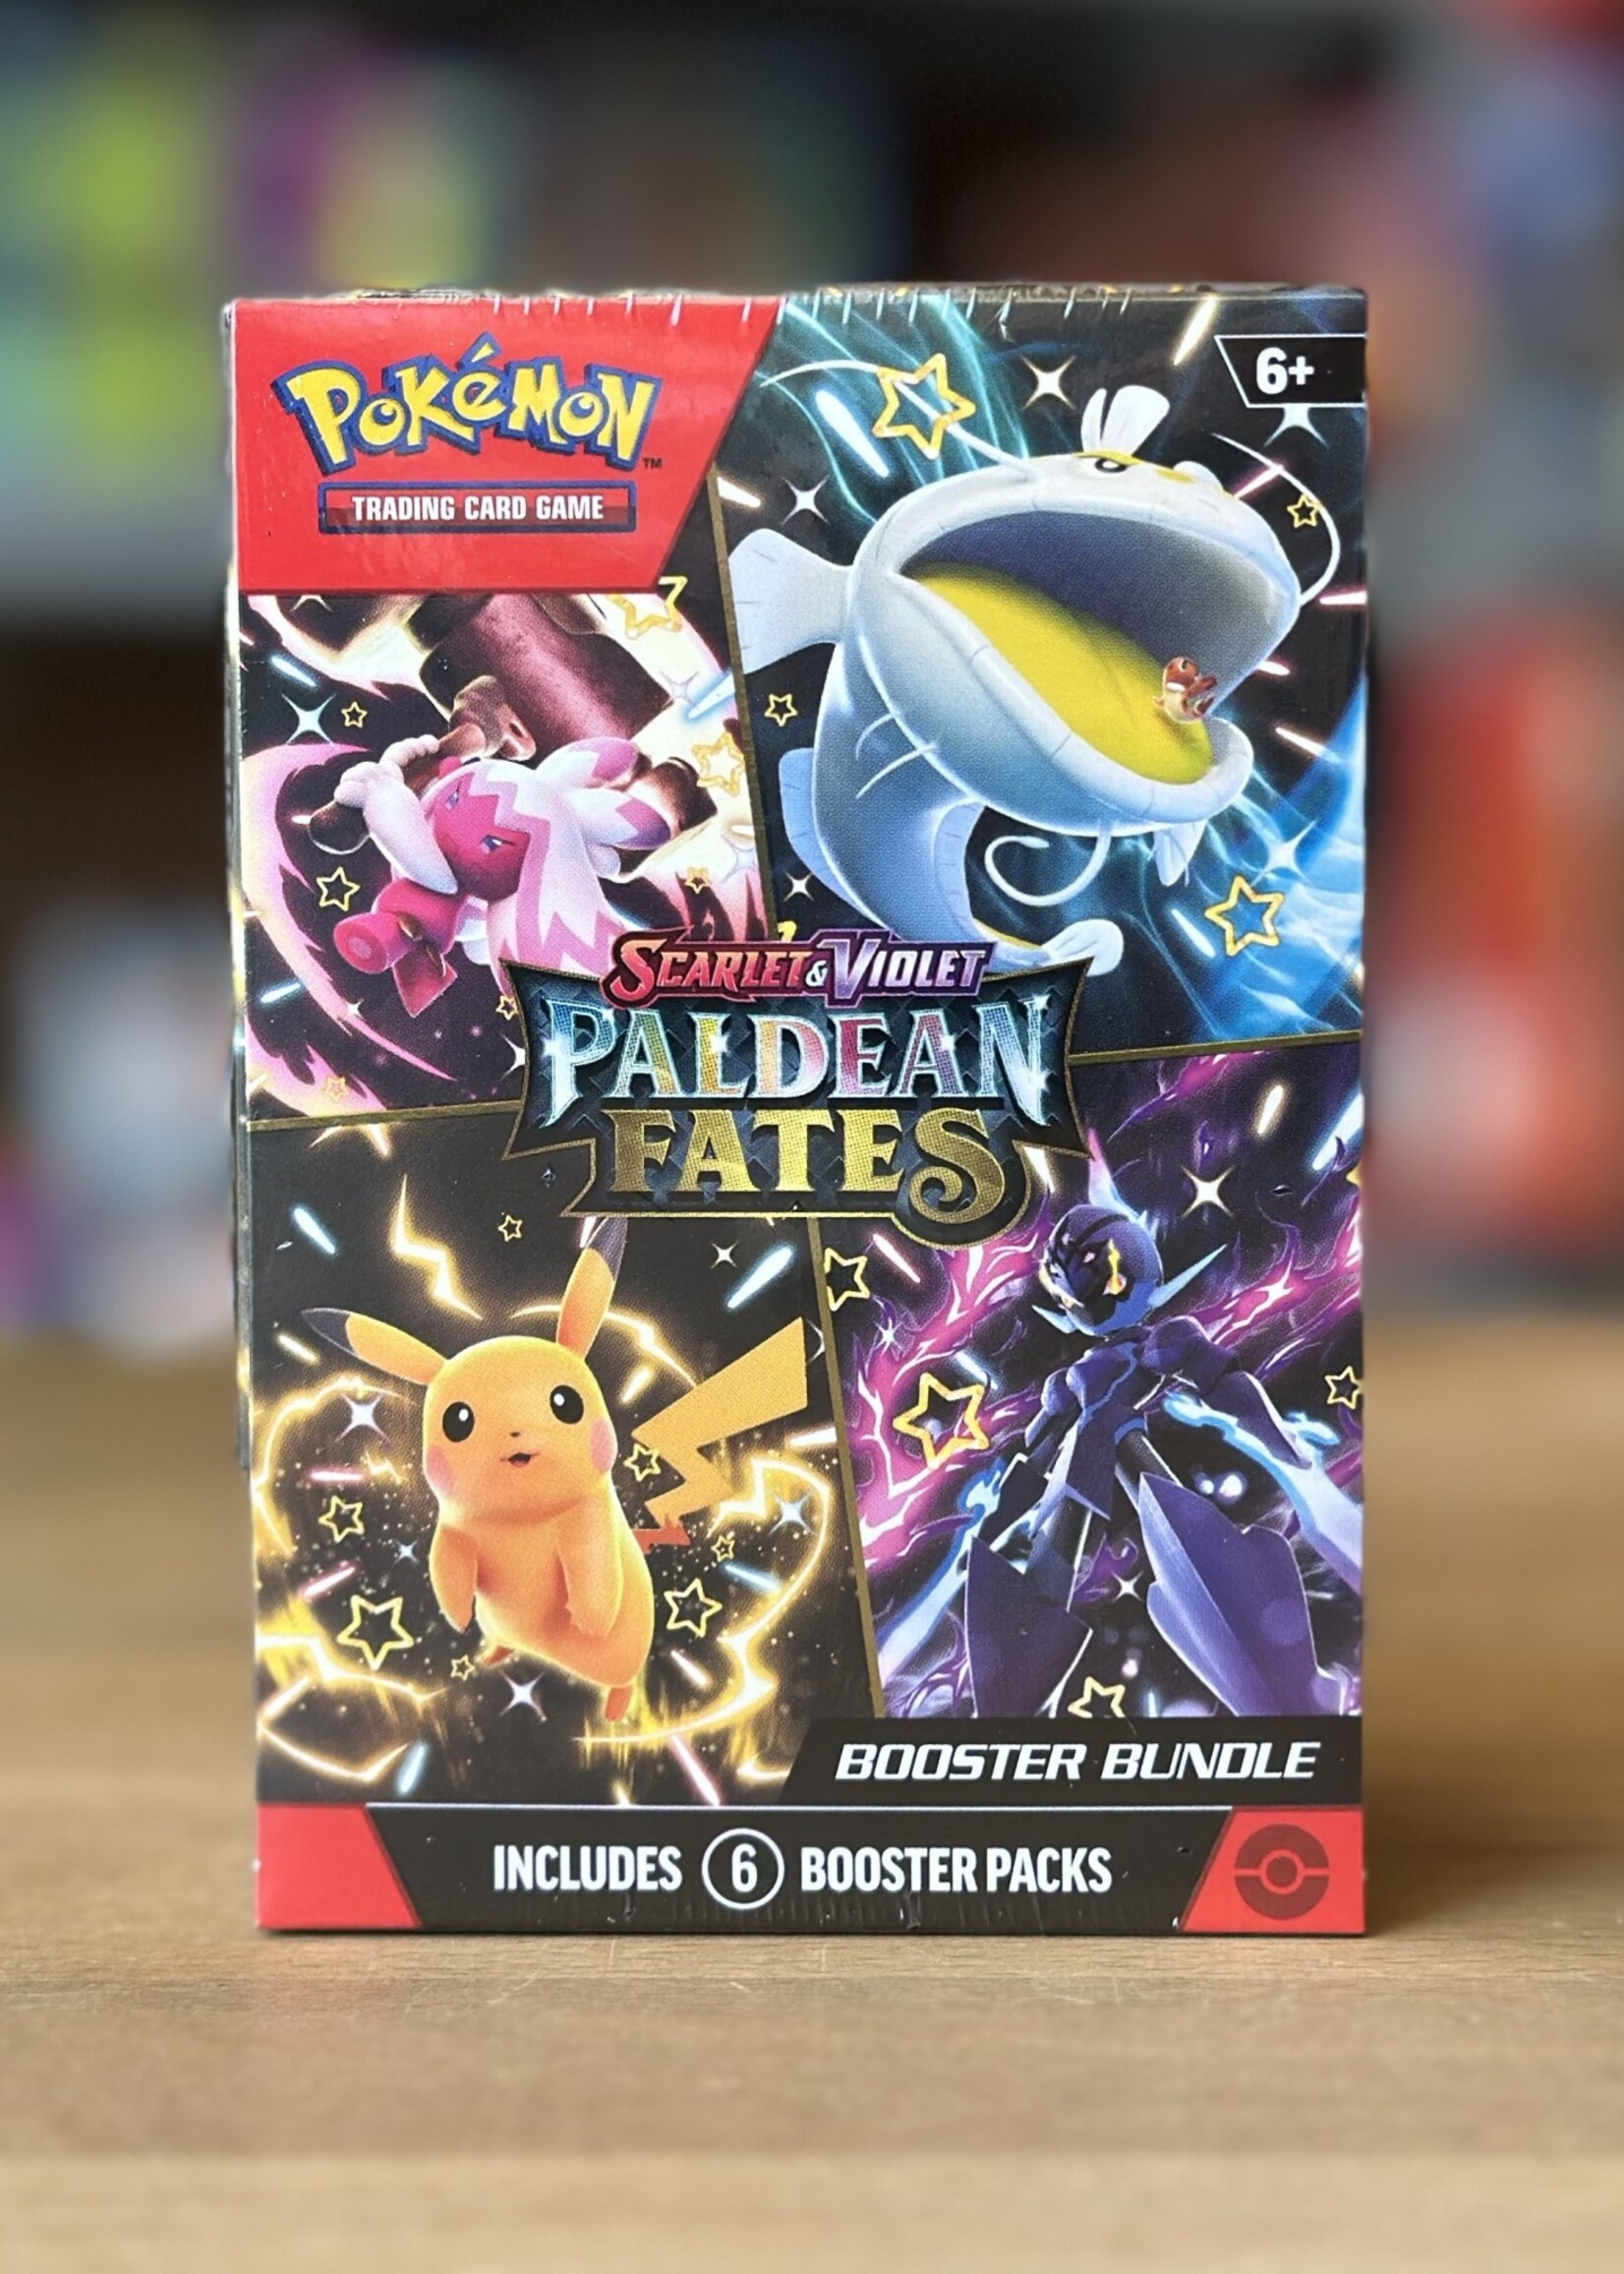 Card Game - Pokémon Booster Pack: Scarlet & Violet - Paldean Fates